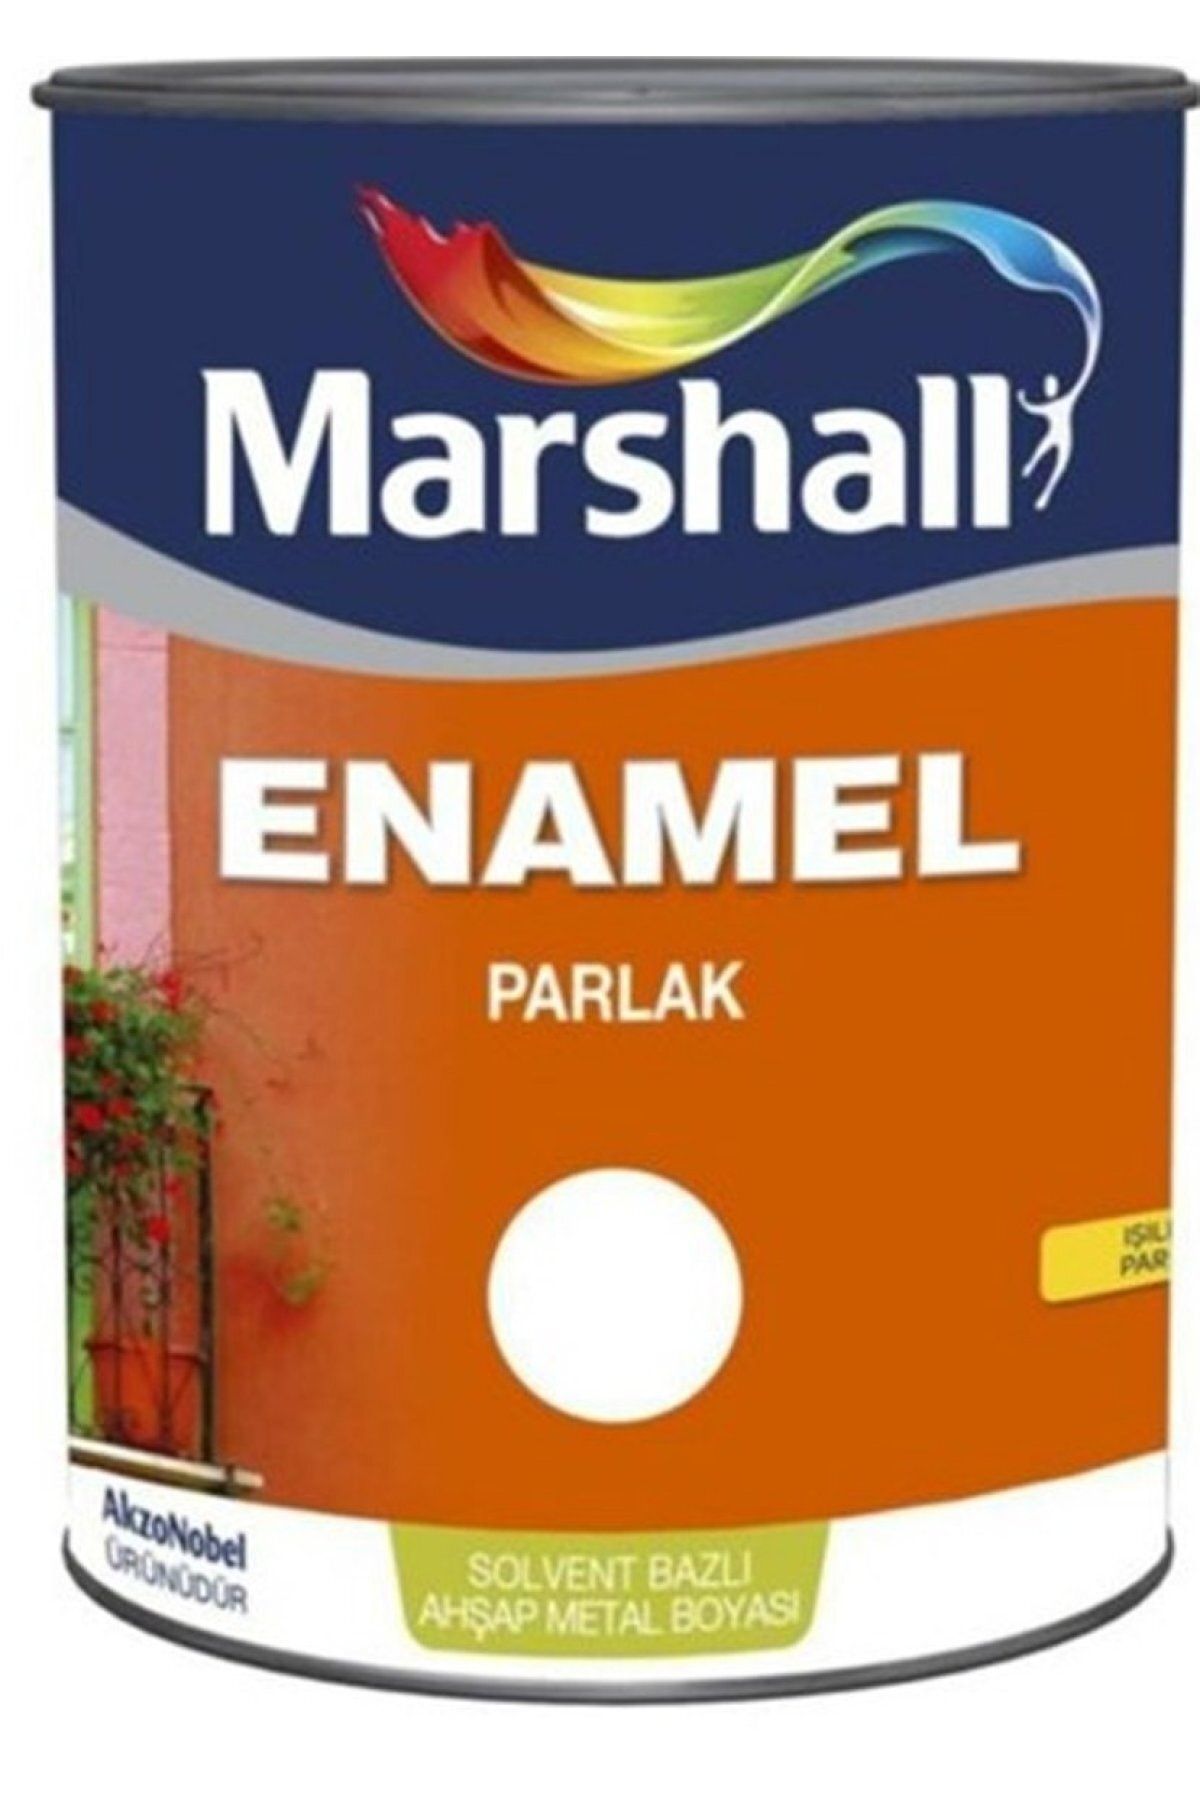 Marshall Enamel Parlak Ahşap ve Metal Boyası 2,5 litre (Sütlü Kahve)